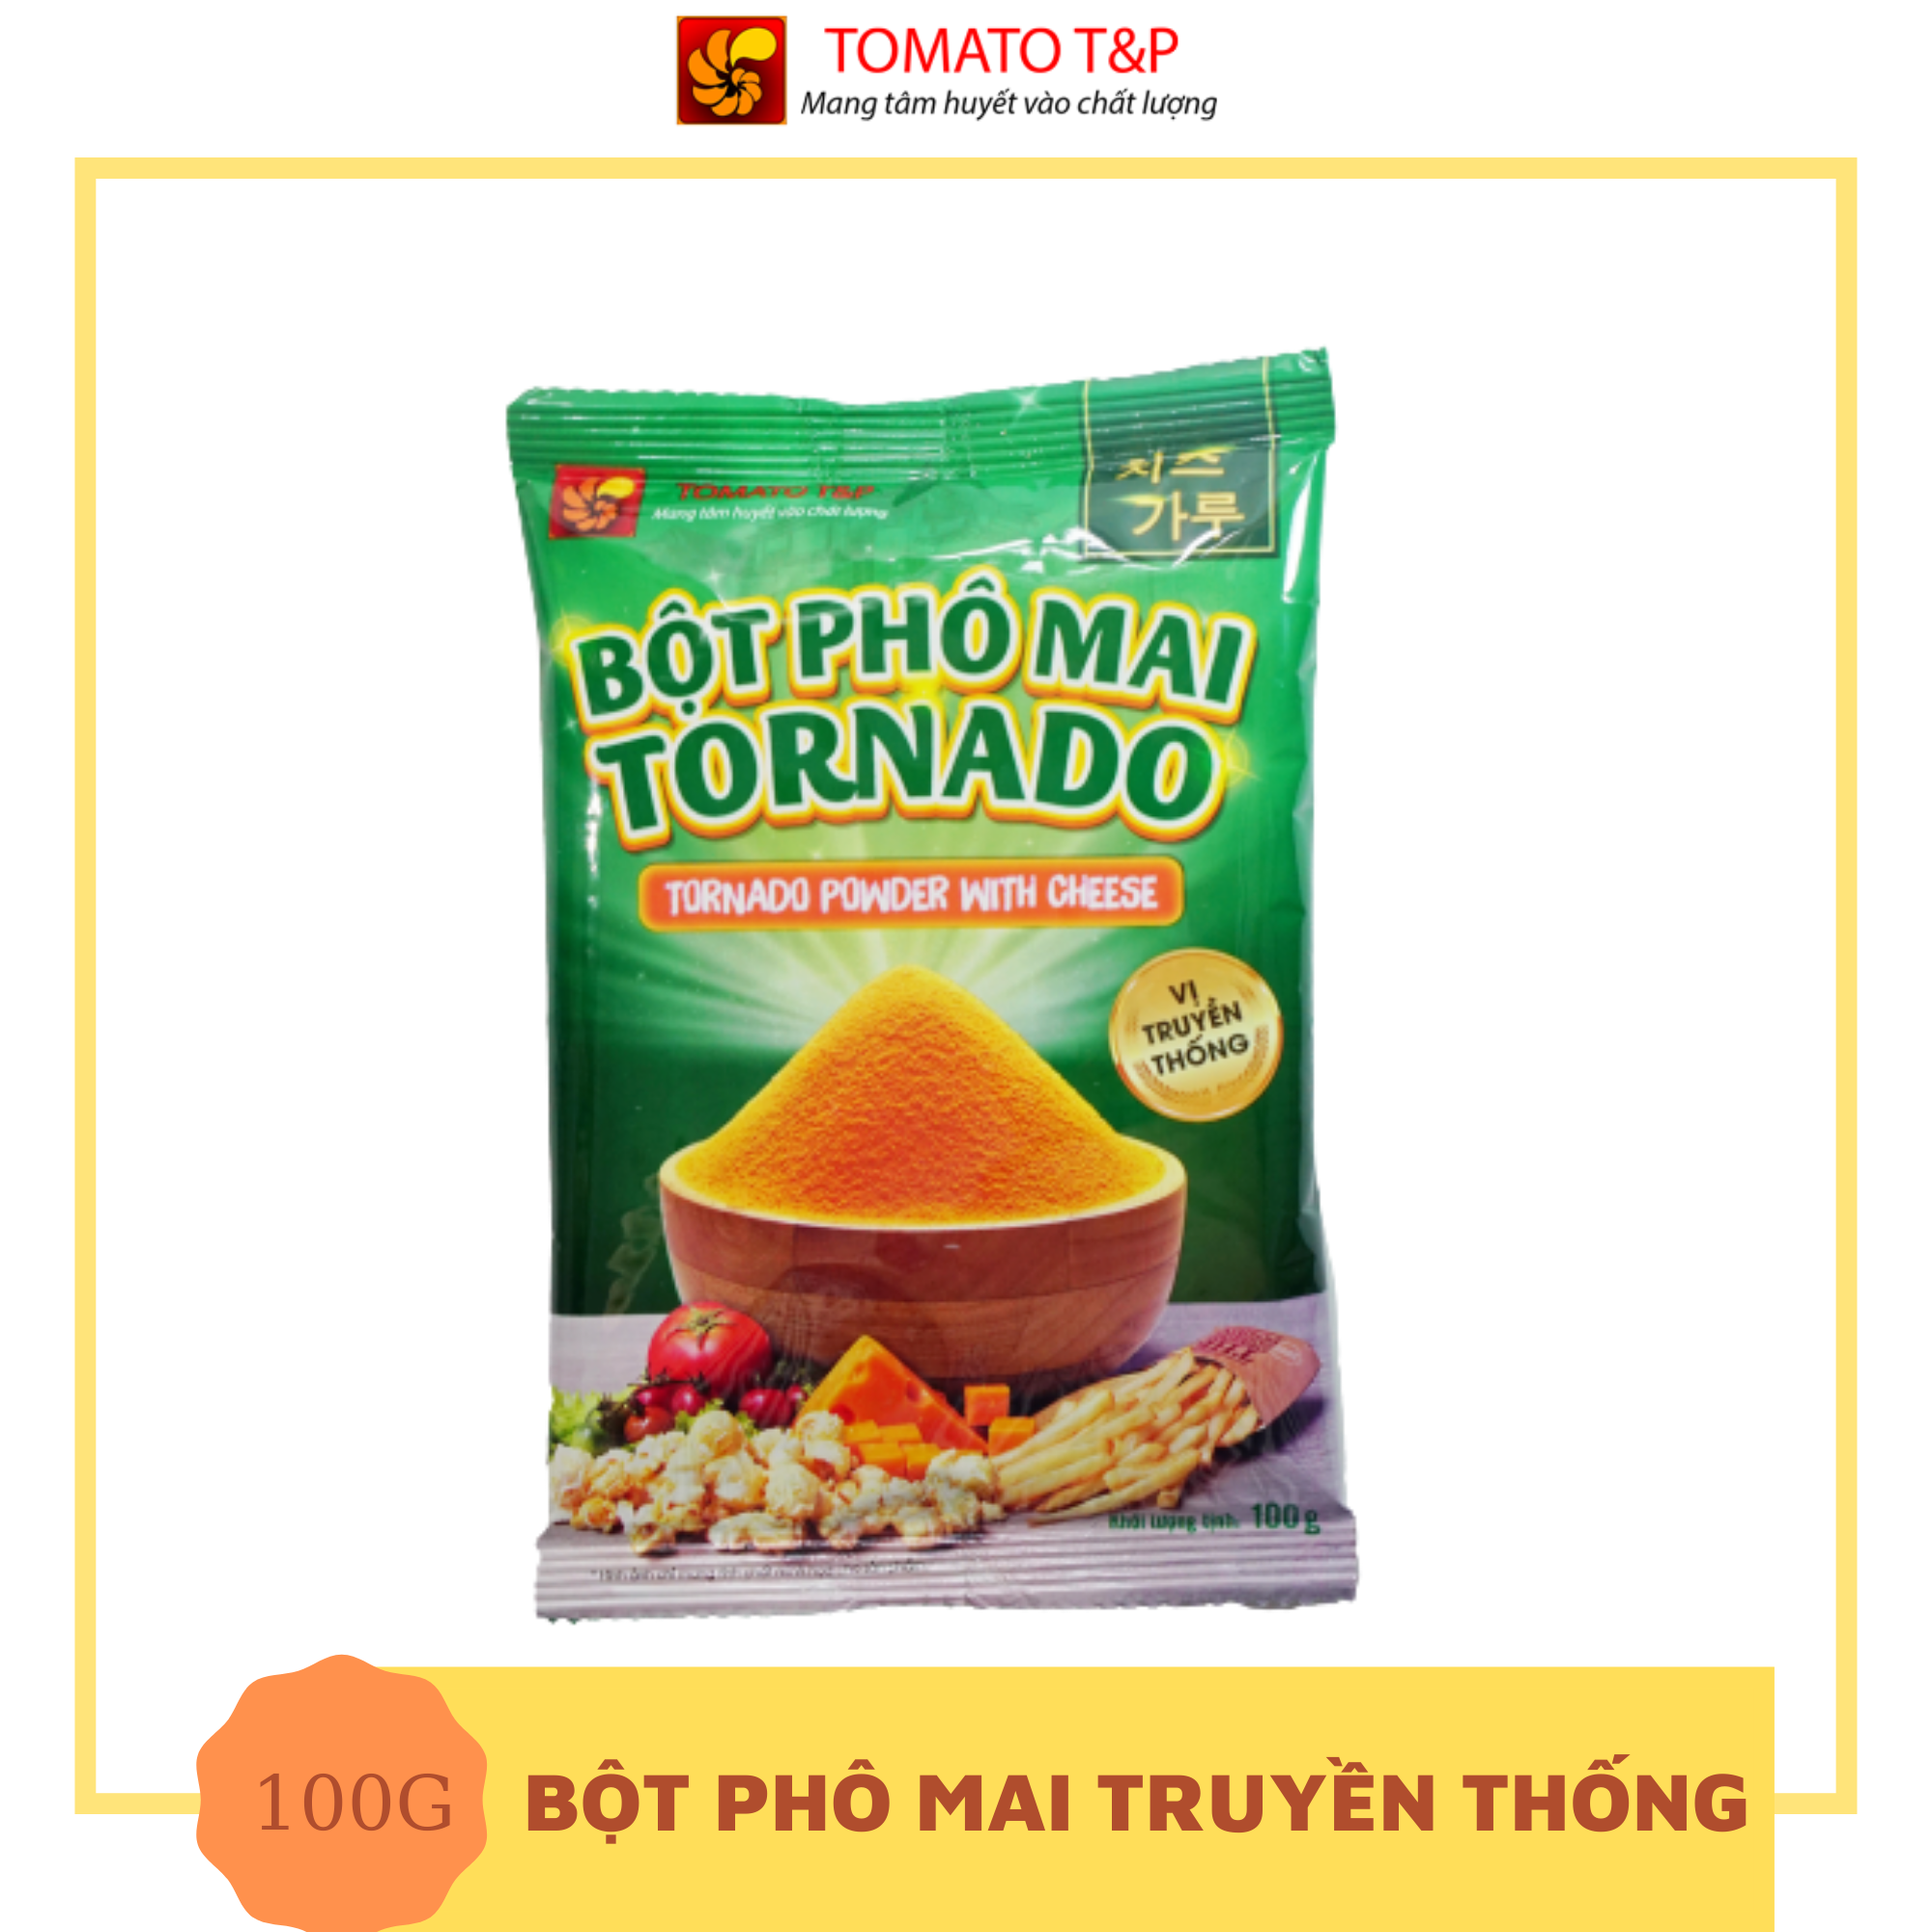 [HCM]Bột phô mai Tornado vị truyền thống - Gói 100g - Tomato T&P